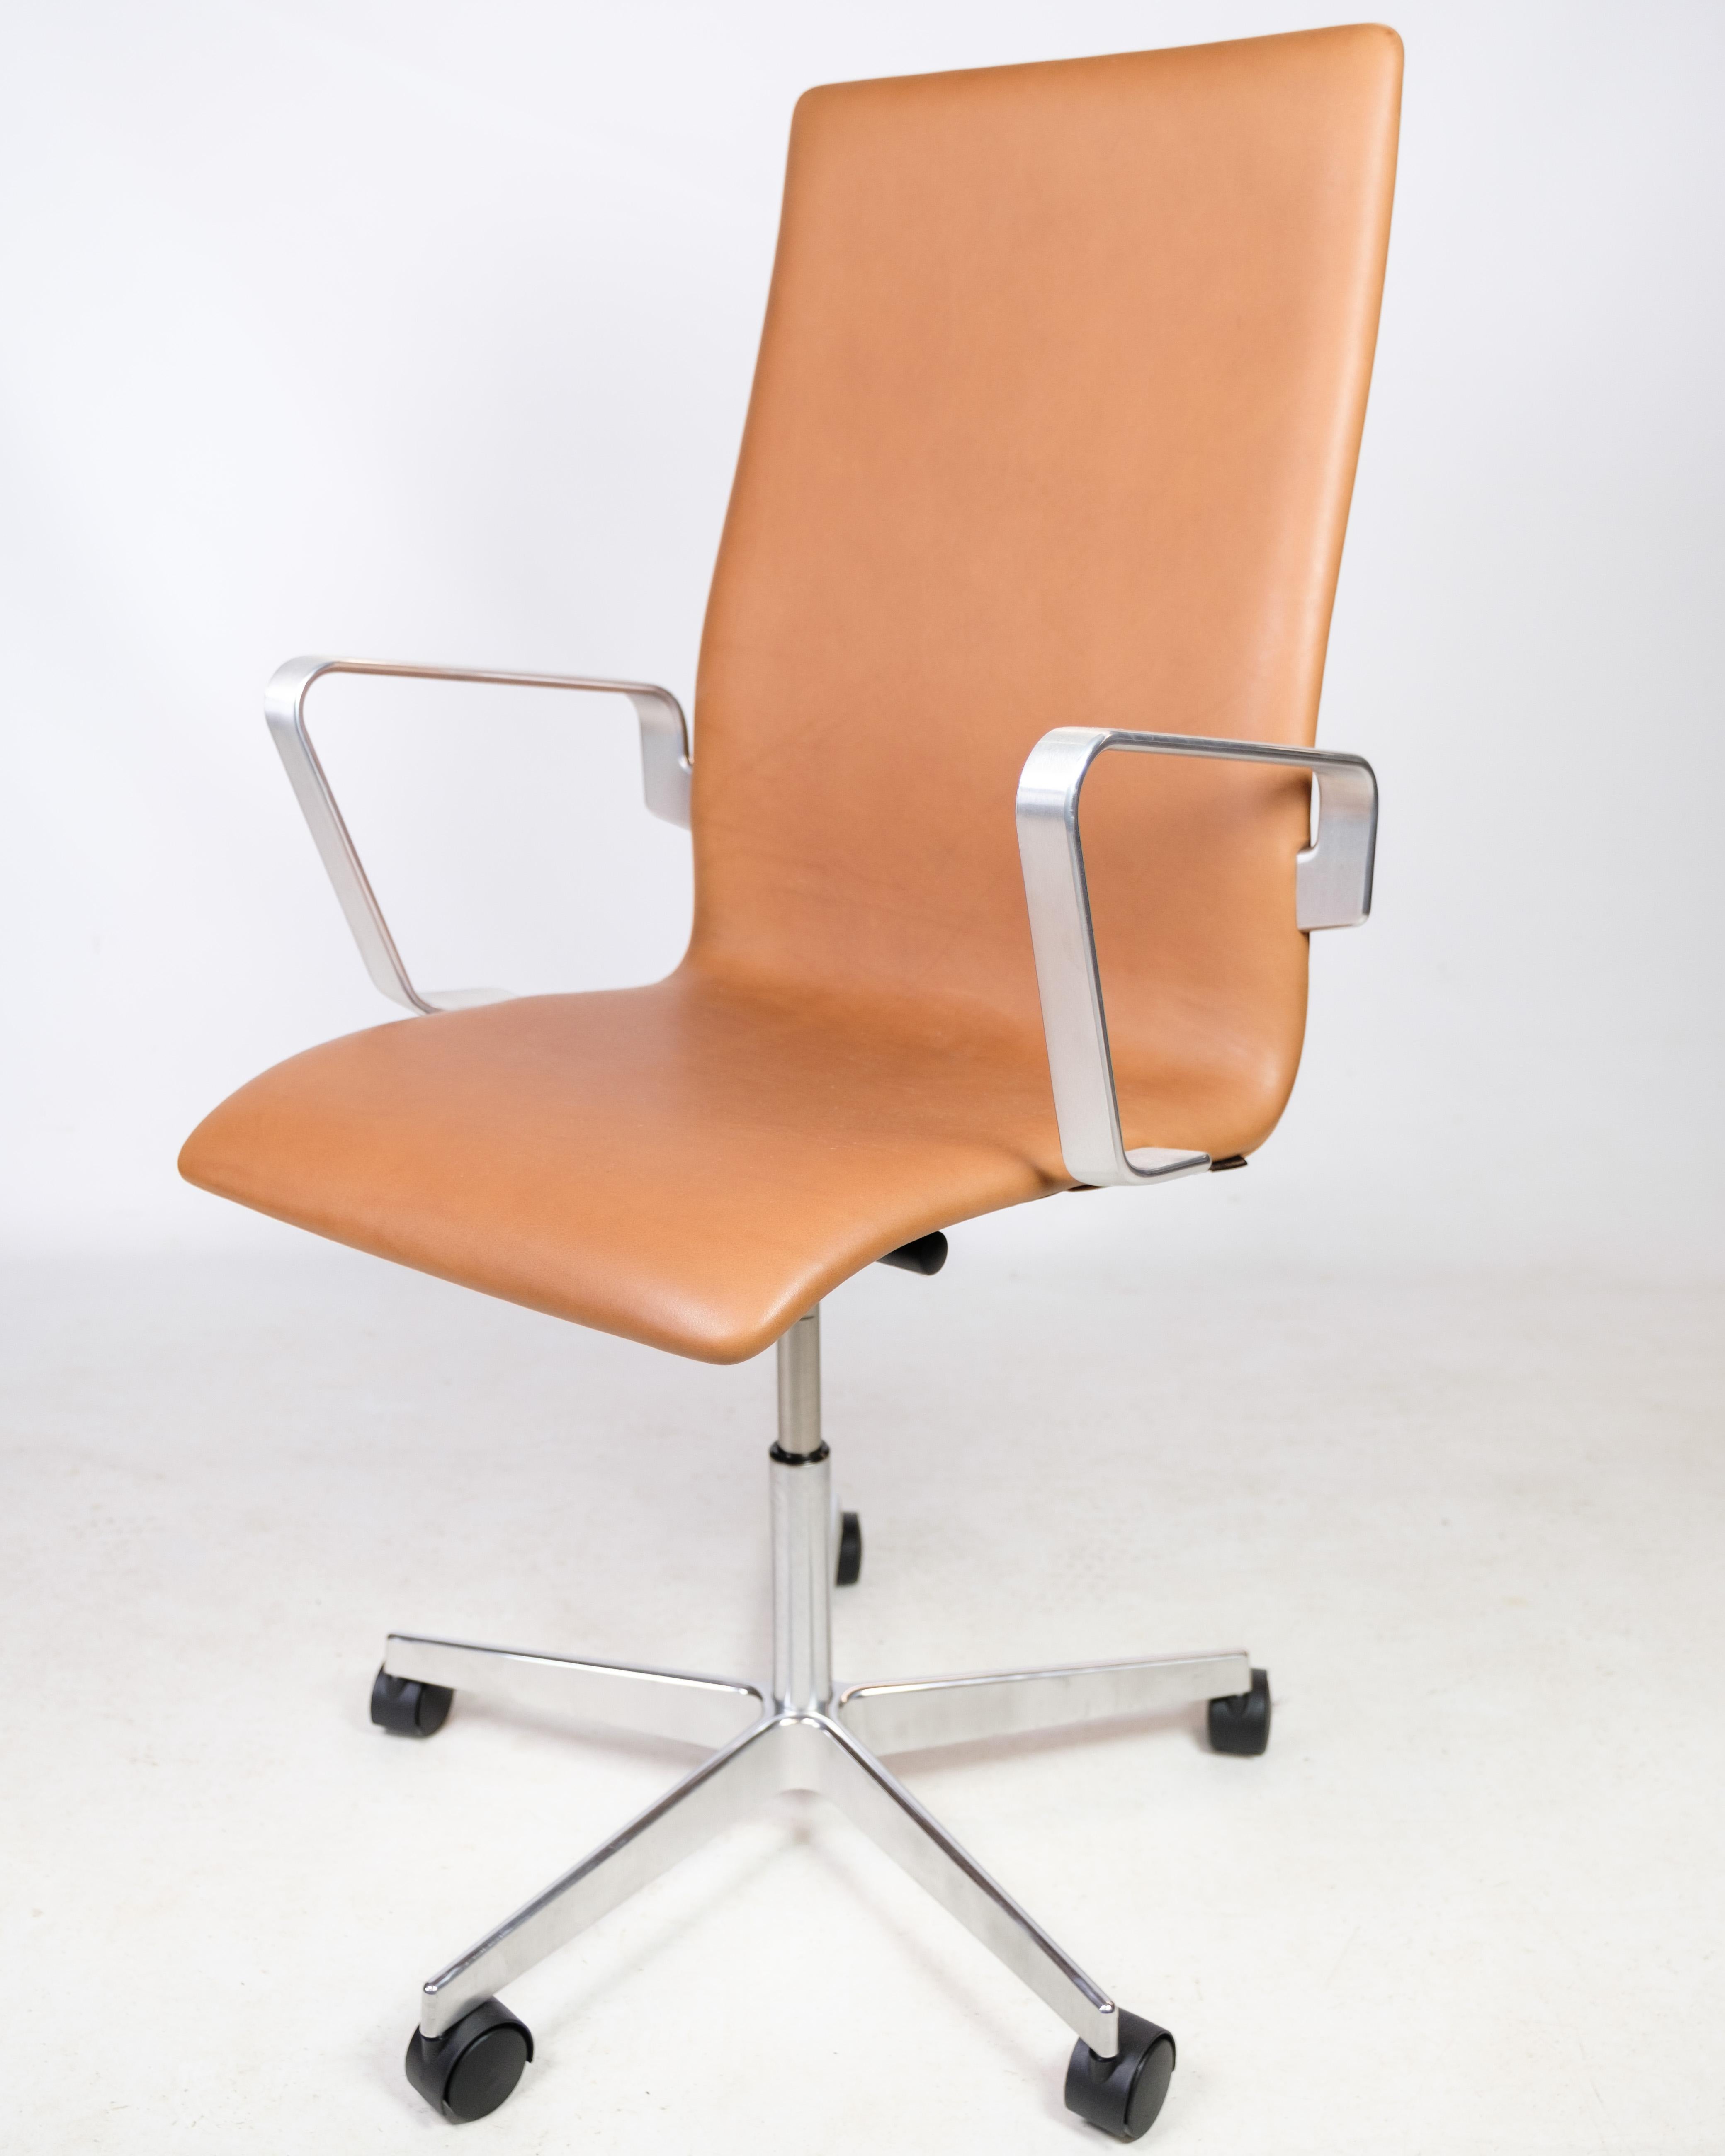 Fauteuil de bureau Design/One Classic, modèle 3293C, avec revêtement en cuir cognac d'origine, conçu par Arne Jacobsen en 1963 et fabriqué par Fritz Hansen. La chaise est en bon état d'usage.
Mesures : H - 100-113, L - 60 cm, P - 60 cm et SH -